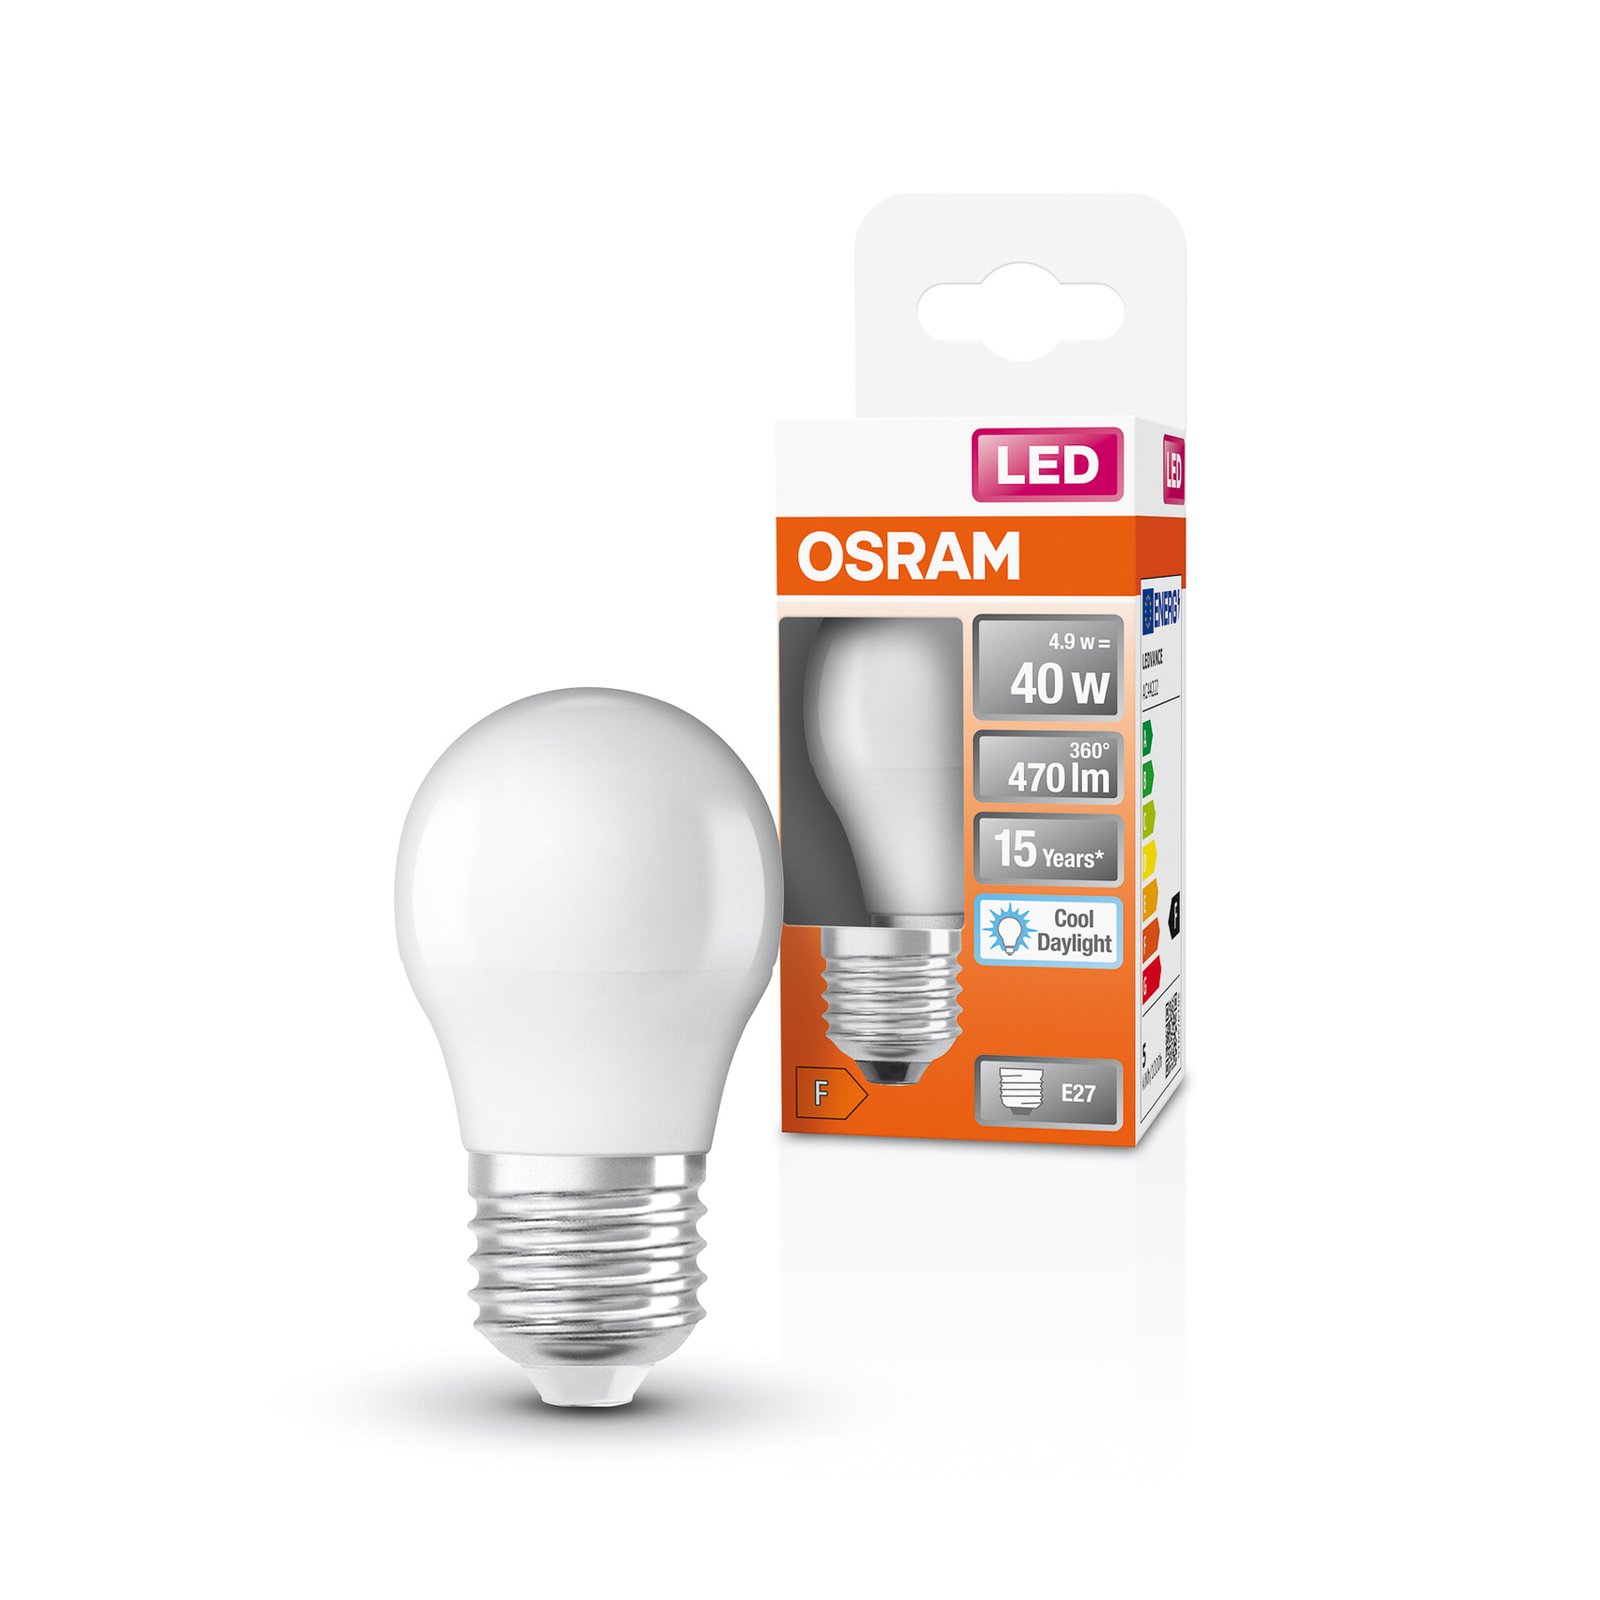 OSRAM Star LED bulb E27 4.9 W 470 lm 6,500 K matt